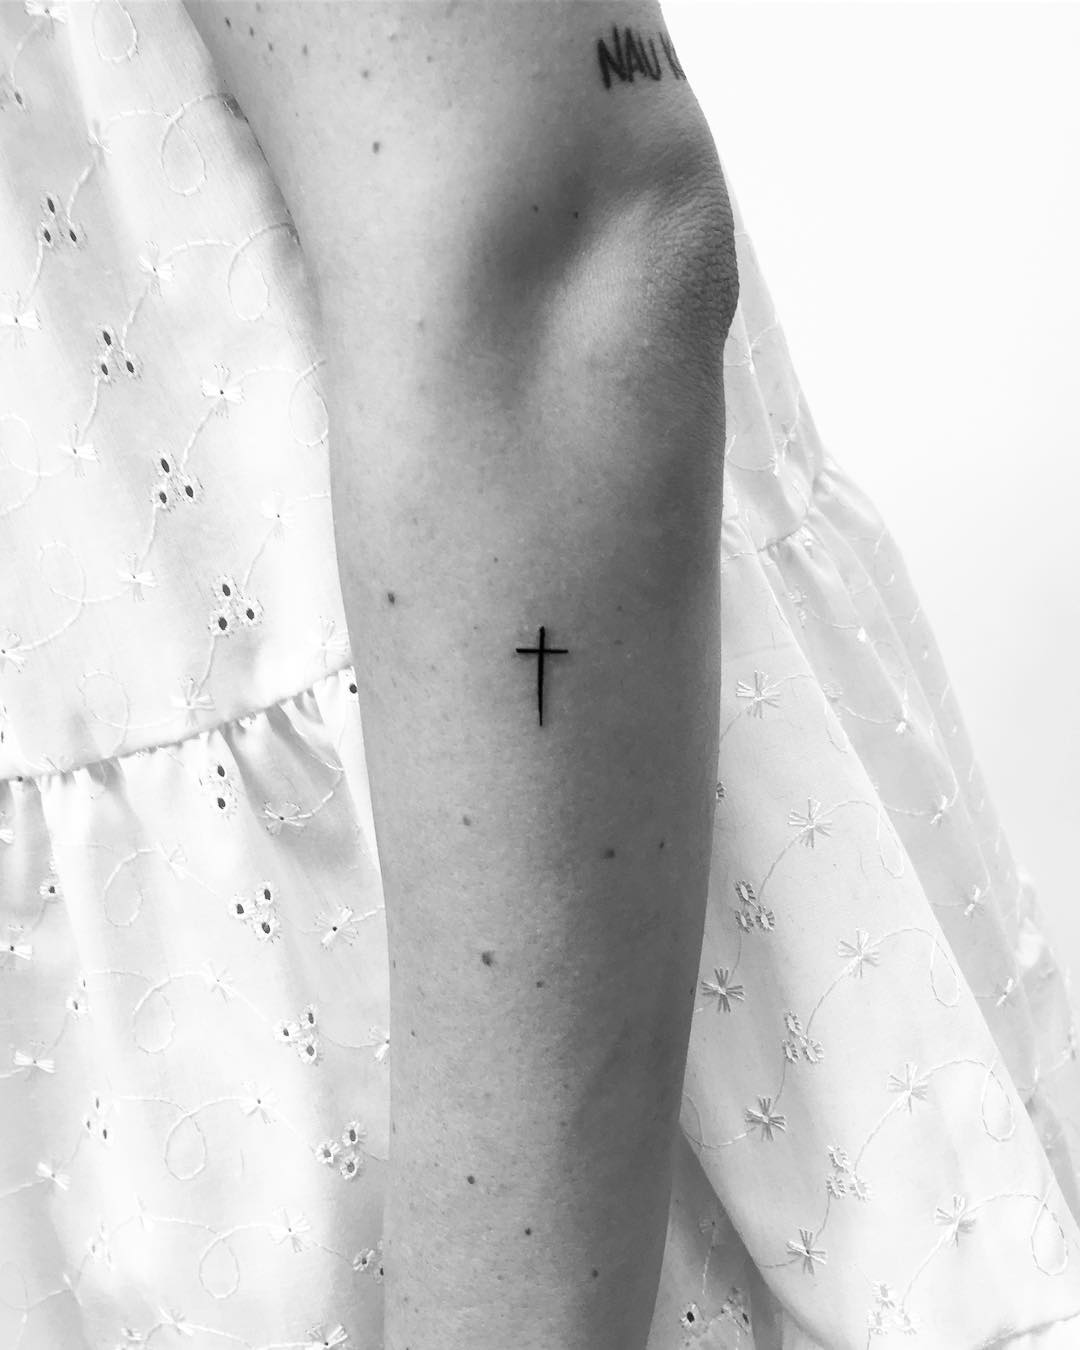 Small cross tattoo by Philipp Eid